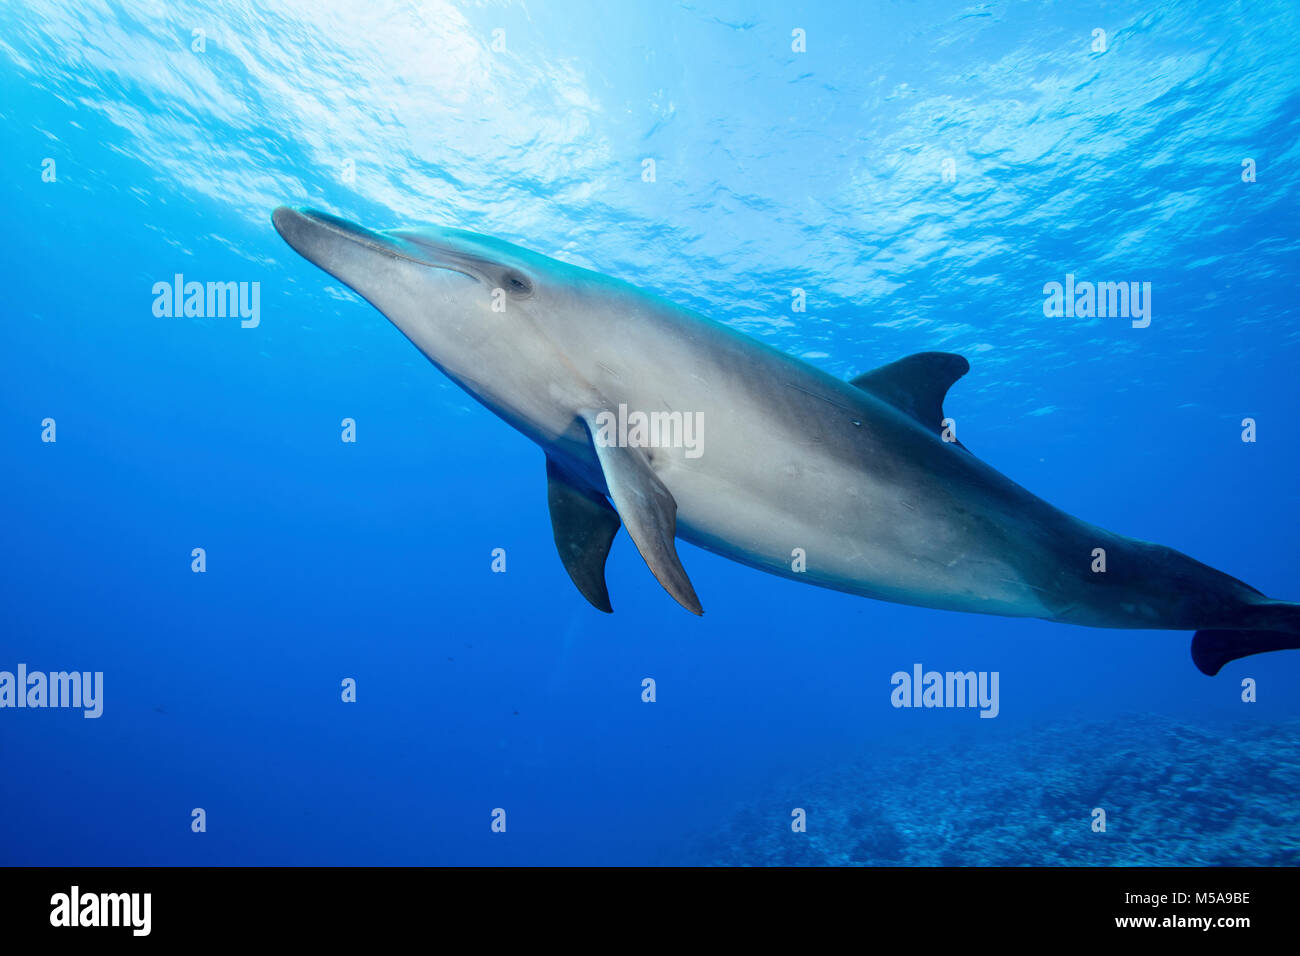 Una solitaria il tursiope o delfino maggiore nell'acqua, Polinesia francese. Foto Stock